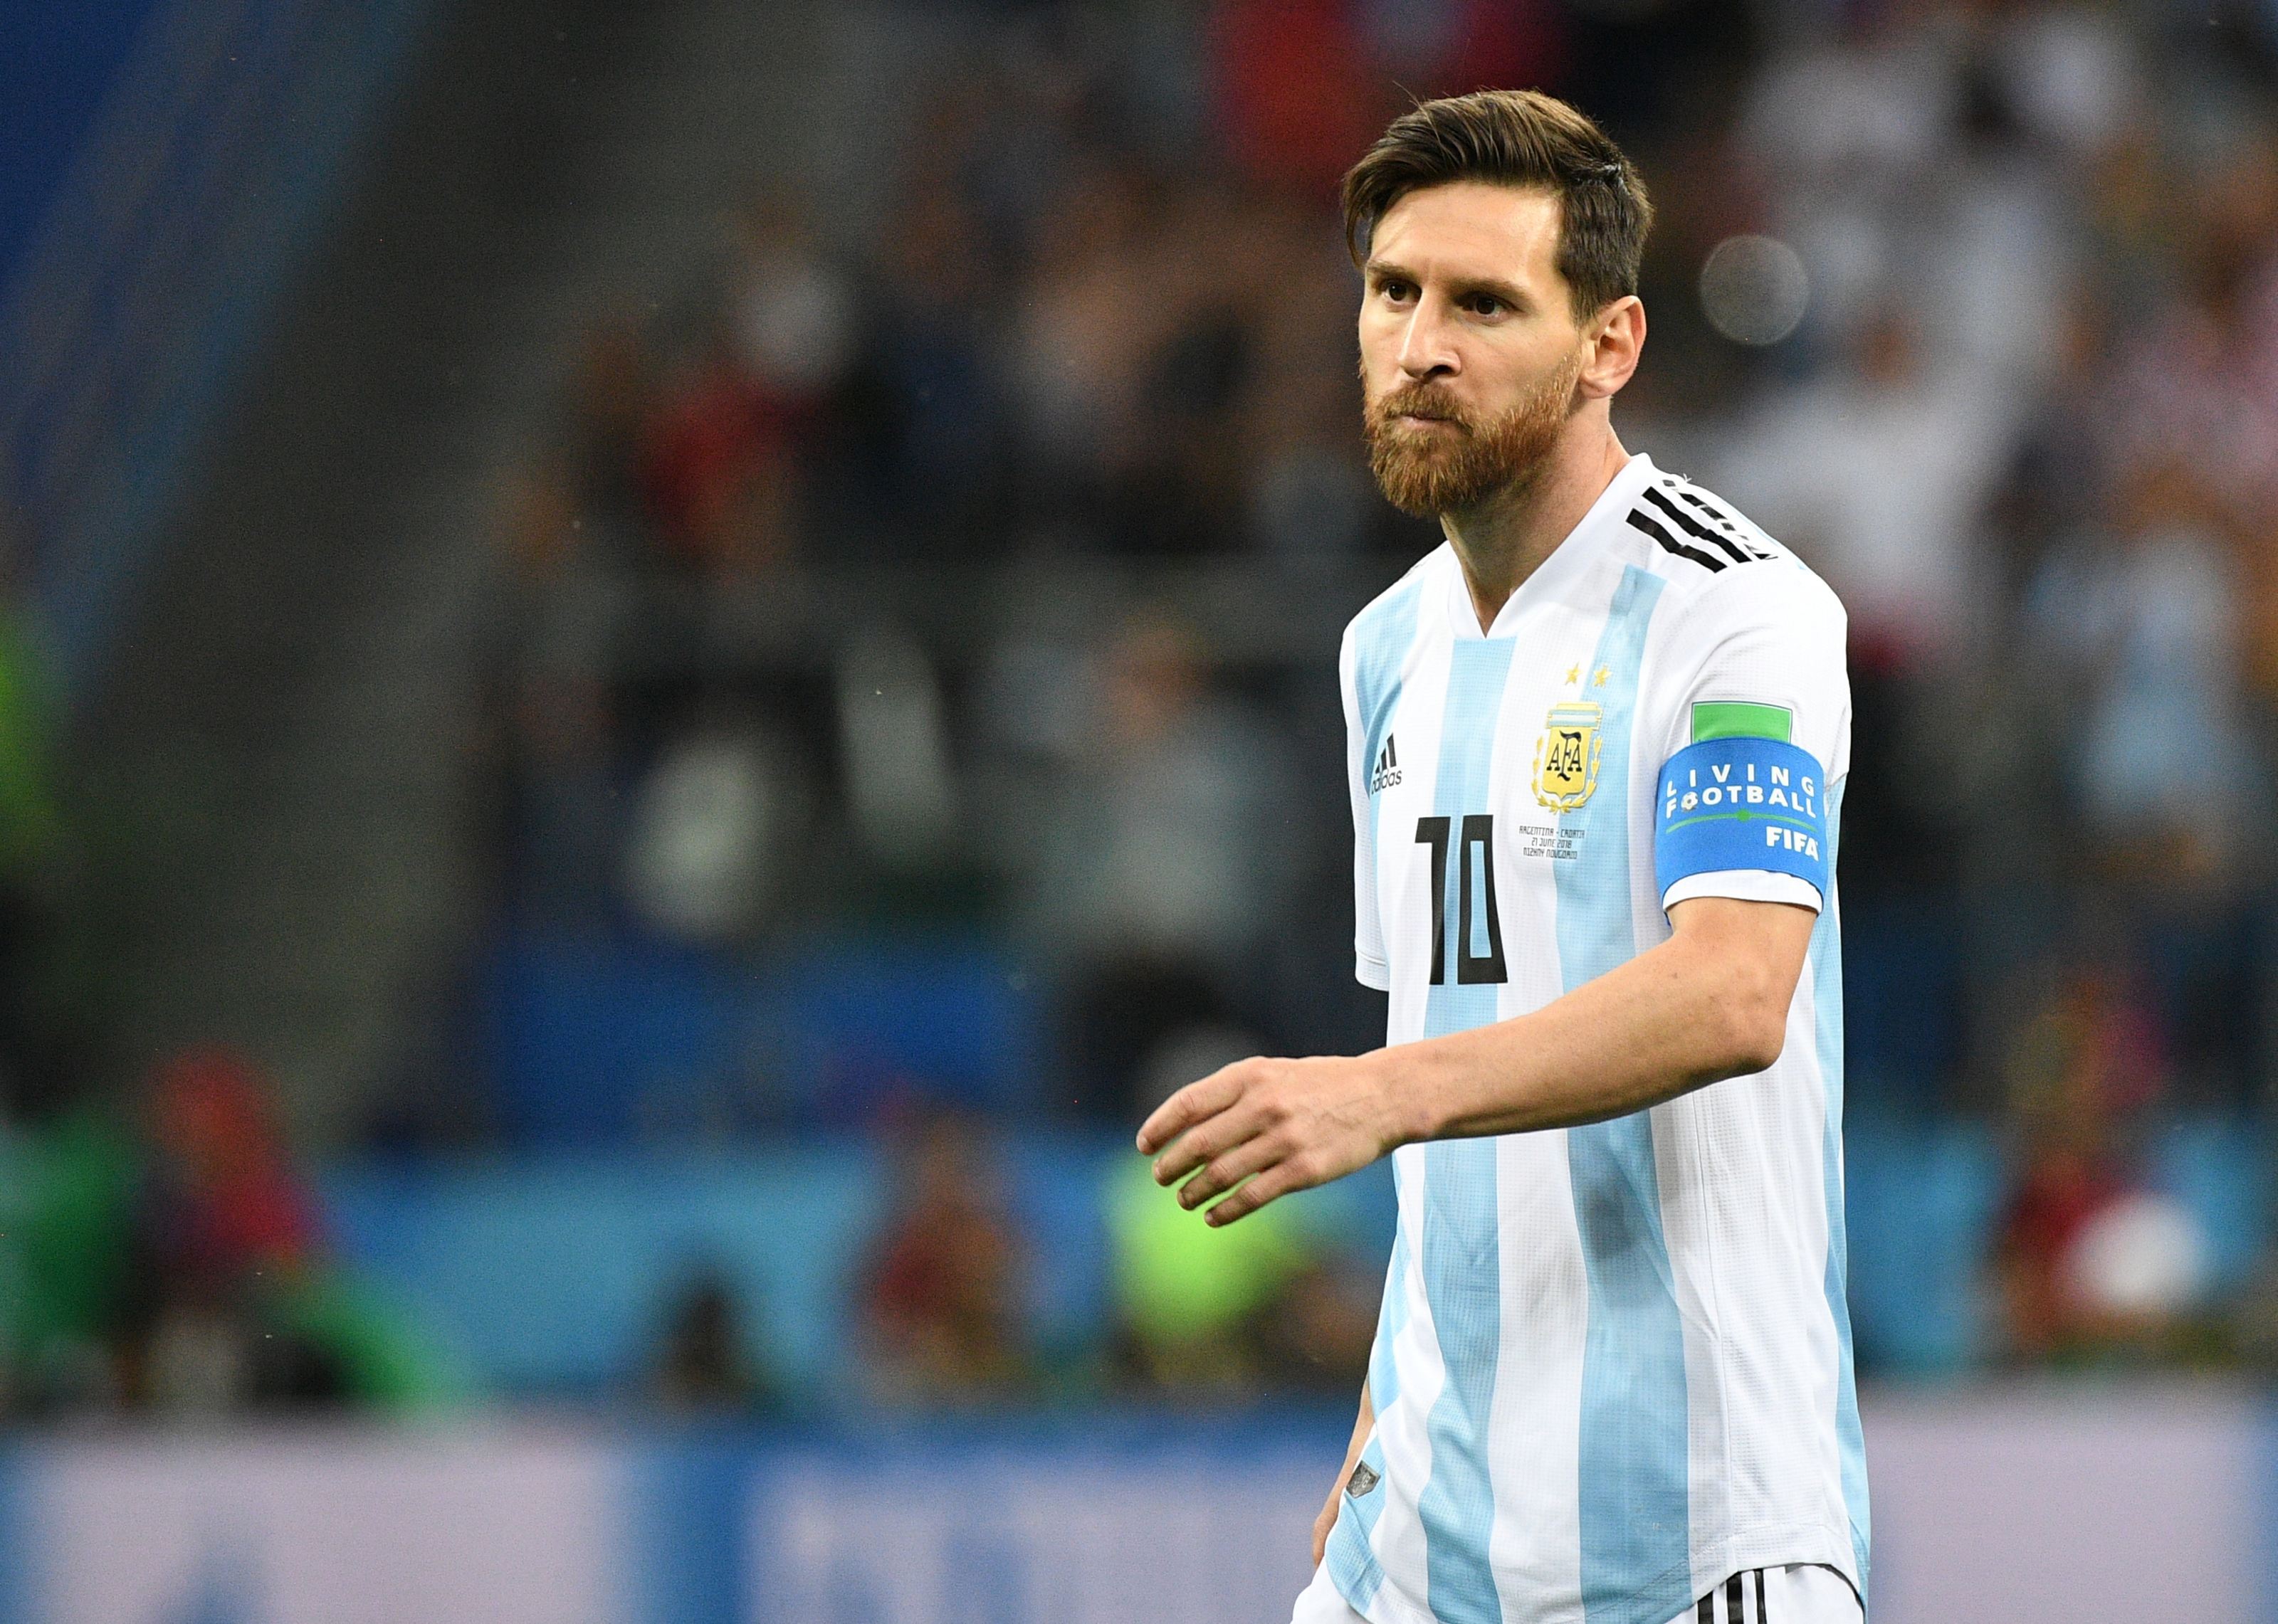 Messi a preluat trofeul mult râvnit de campion mondial, după cea mai frumoasă finală din istorie